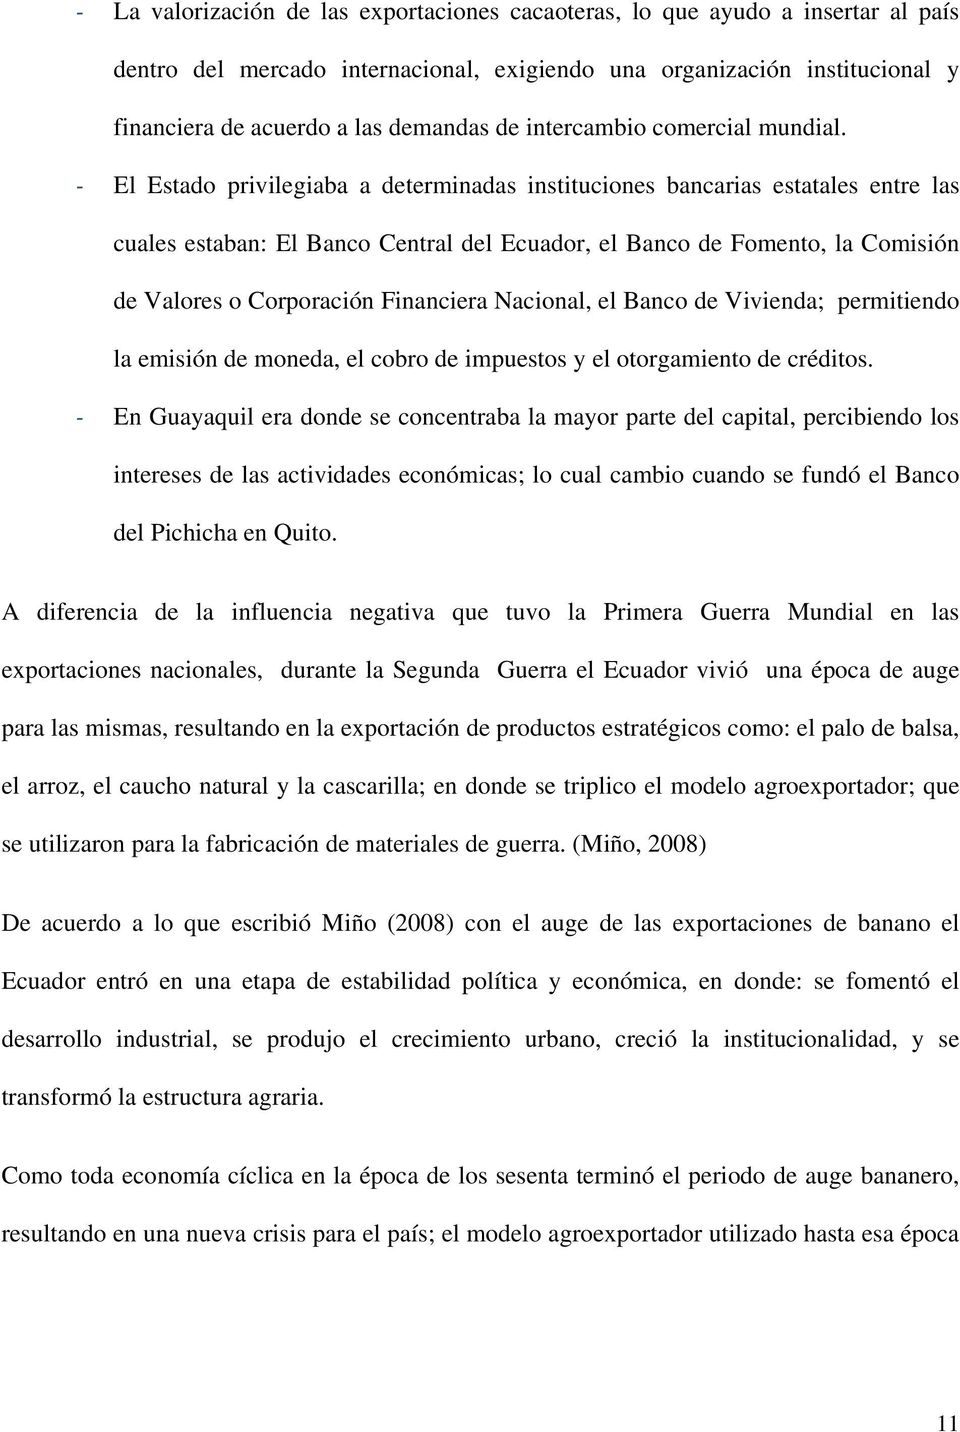 - El Estado privilegiaba a determinadas instituciones bancarias estatales entre las cuales estaban: El Banco Central del Ecuador, el Banco de Fomento, la Comisión de Valores o Corporación Financiera